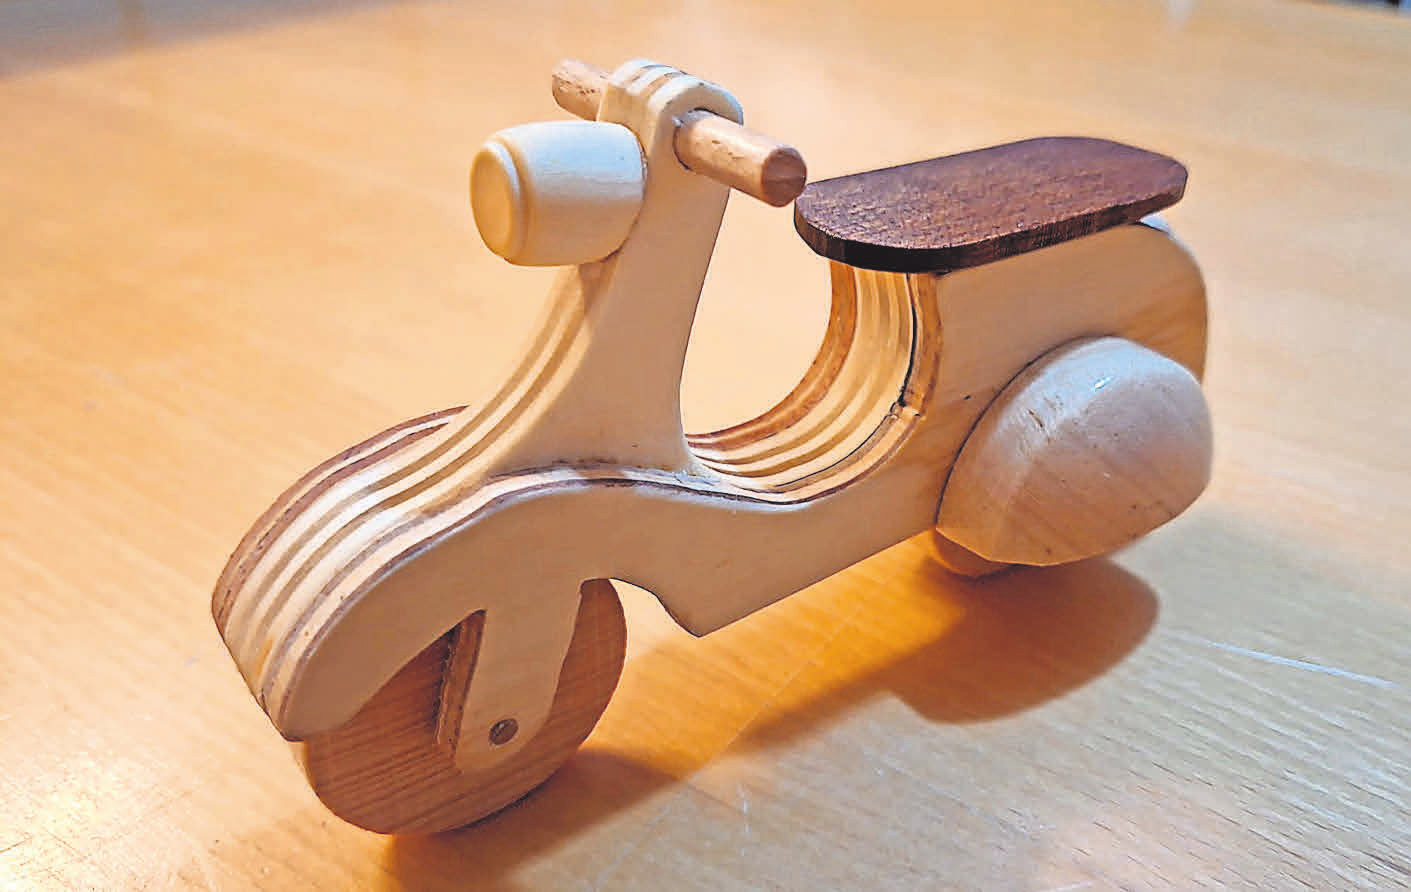 Ein Basteltipp von Manfred Böttcher: Dieses Holzspielzeug habe ich für einen eingefleischten Motorrollerfan aus Resthölzern gebastelt. 15 cm lang